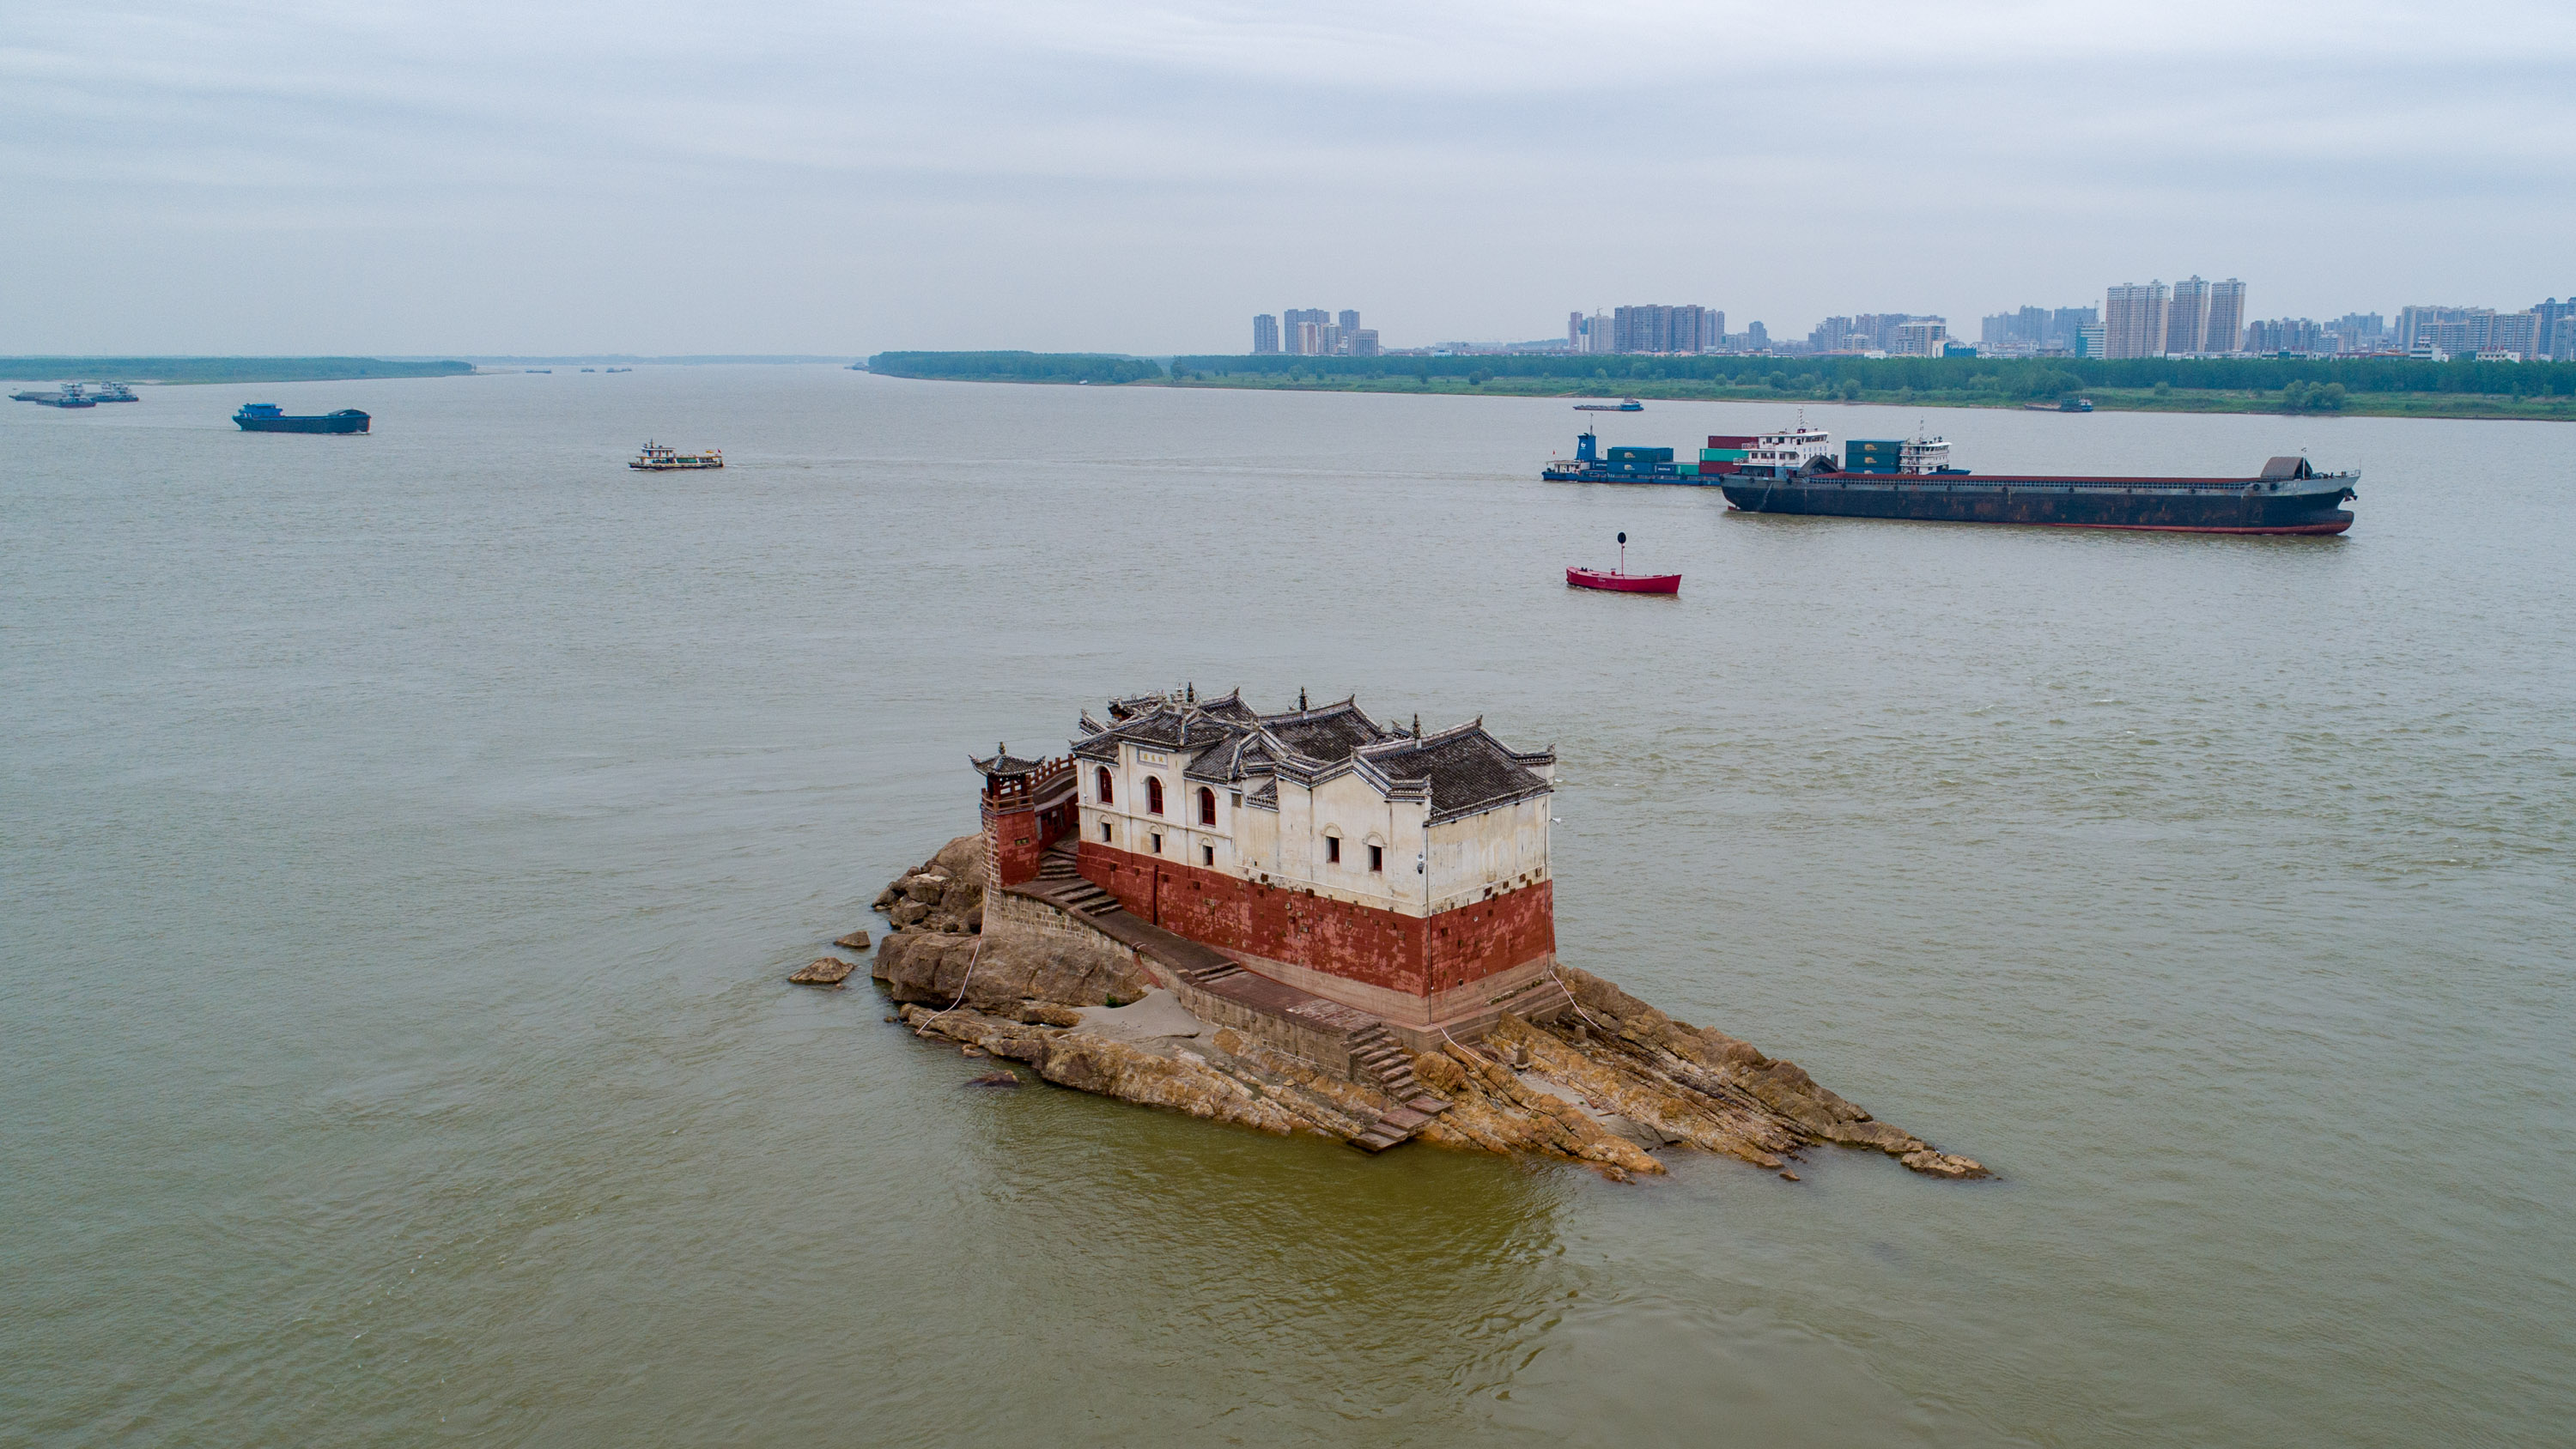 原创长江水面上唯一尚存的观音阁,七百年来多次淹没,近年却平安无事